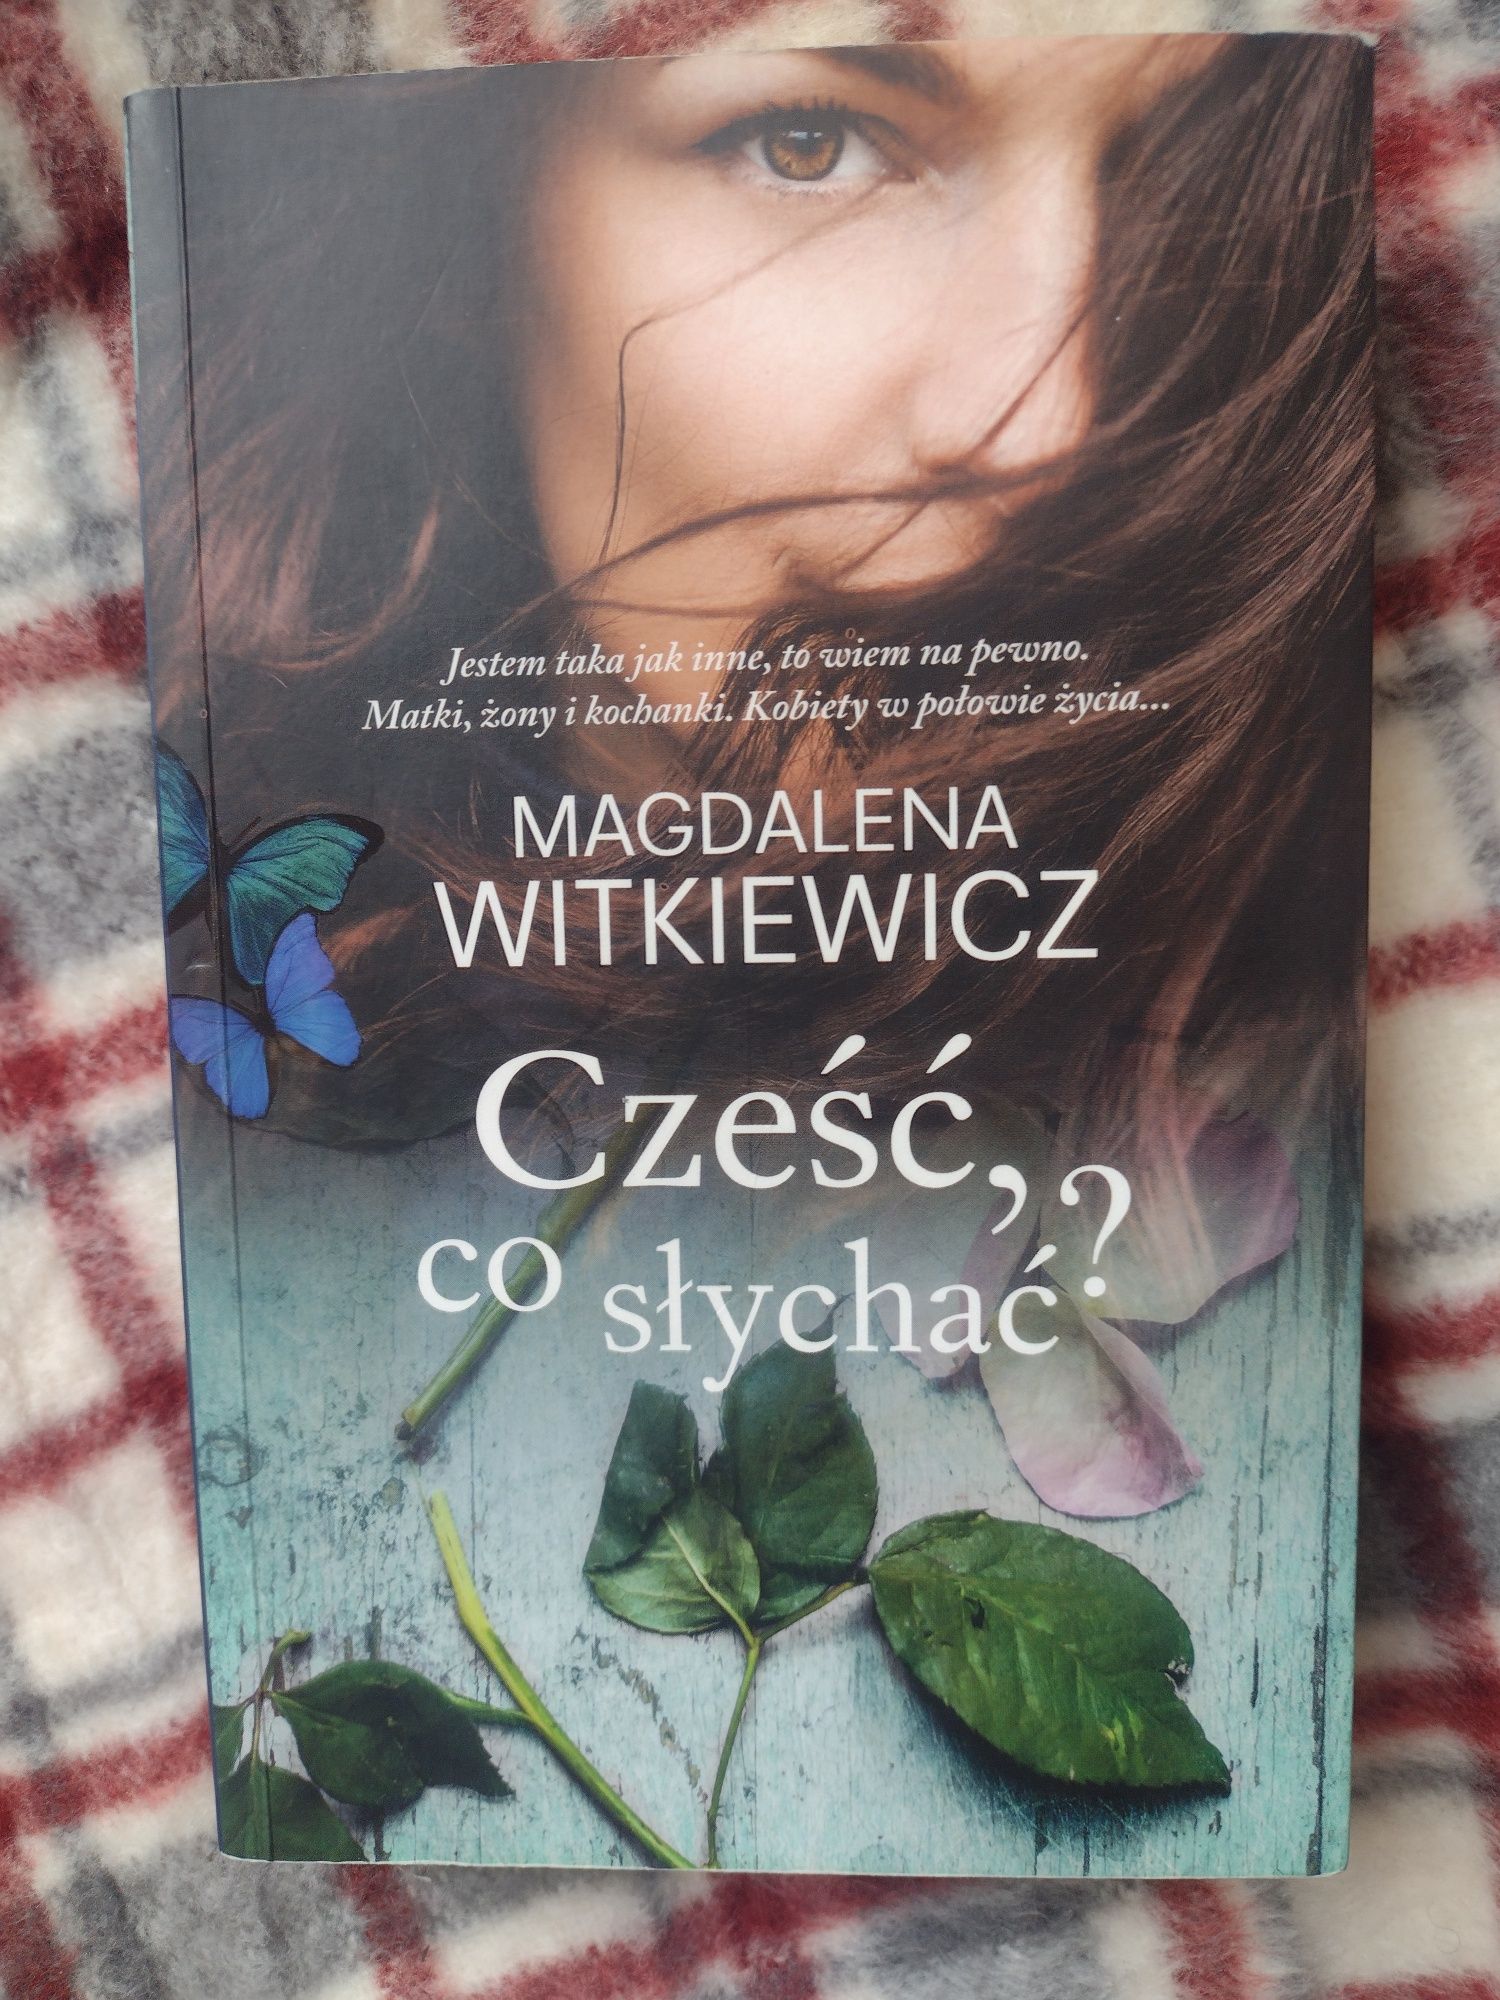 Magdalena Witkiewicz "Cześć, co słychać?"